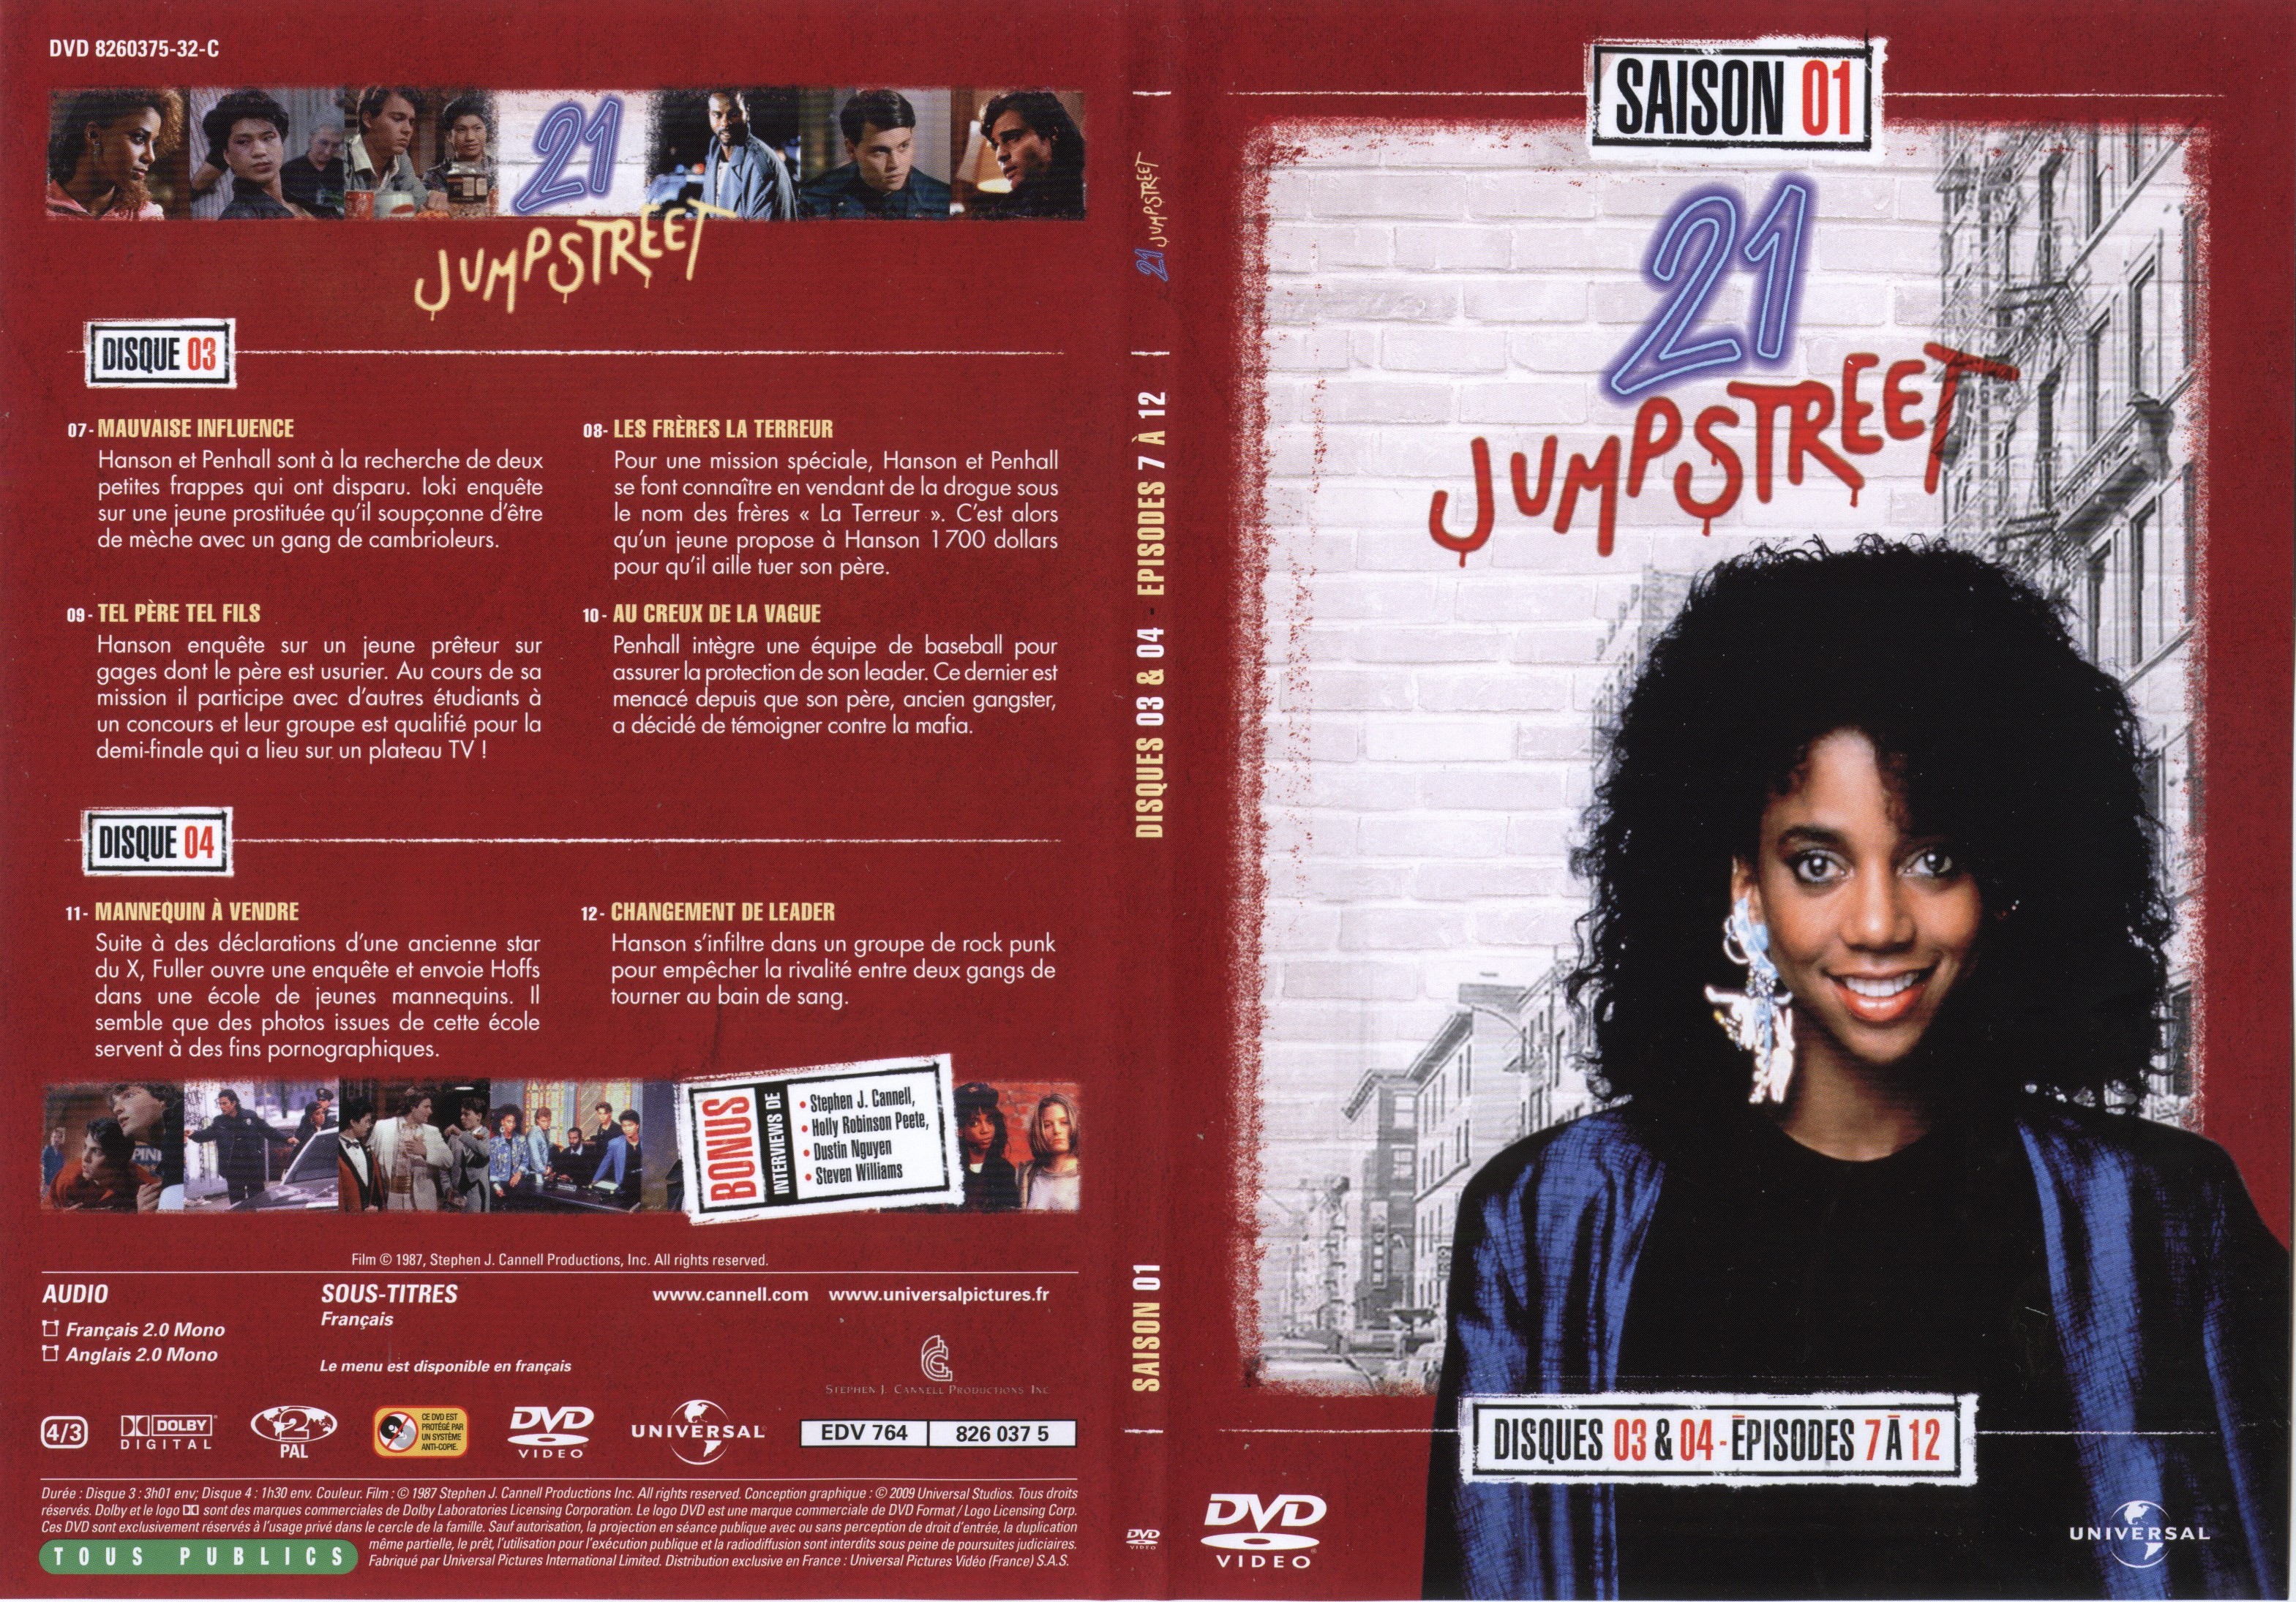 Jaquette DVD 21 jump street Saison 01 DVD 03